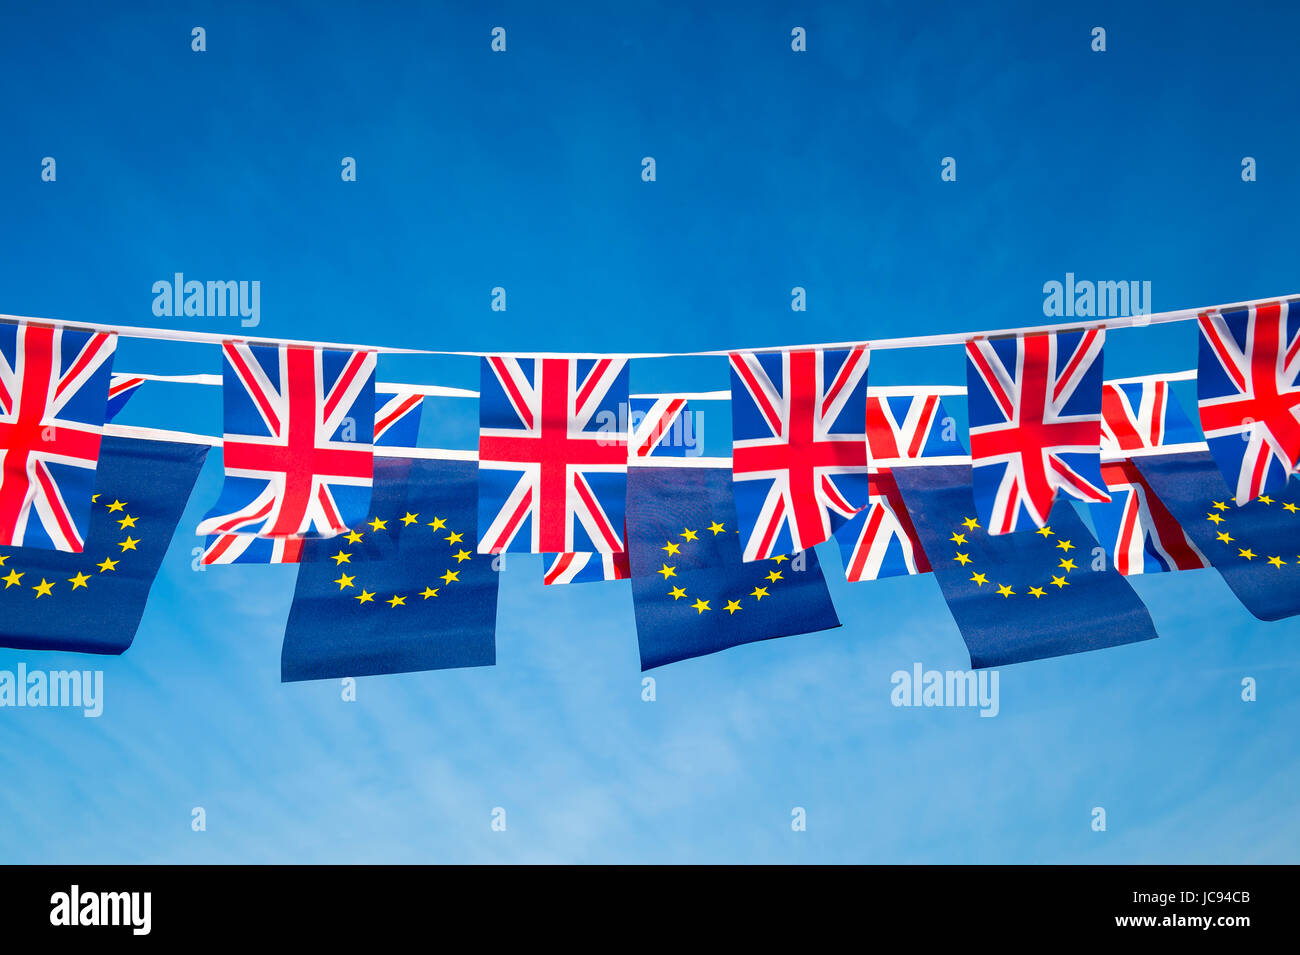 Unione europea e britannica Union Jack flag bunting battenti in blu luminoso cielo in una dichiarazione della Brexit negoziati UE Foto Stock